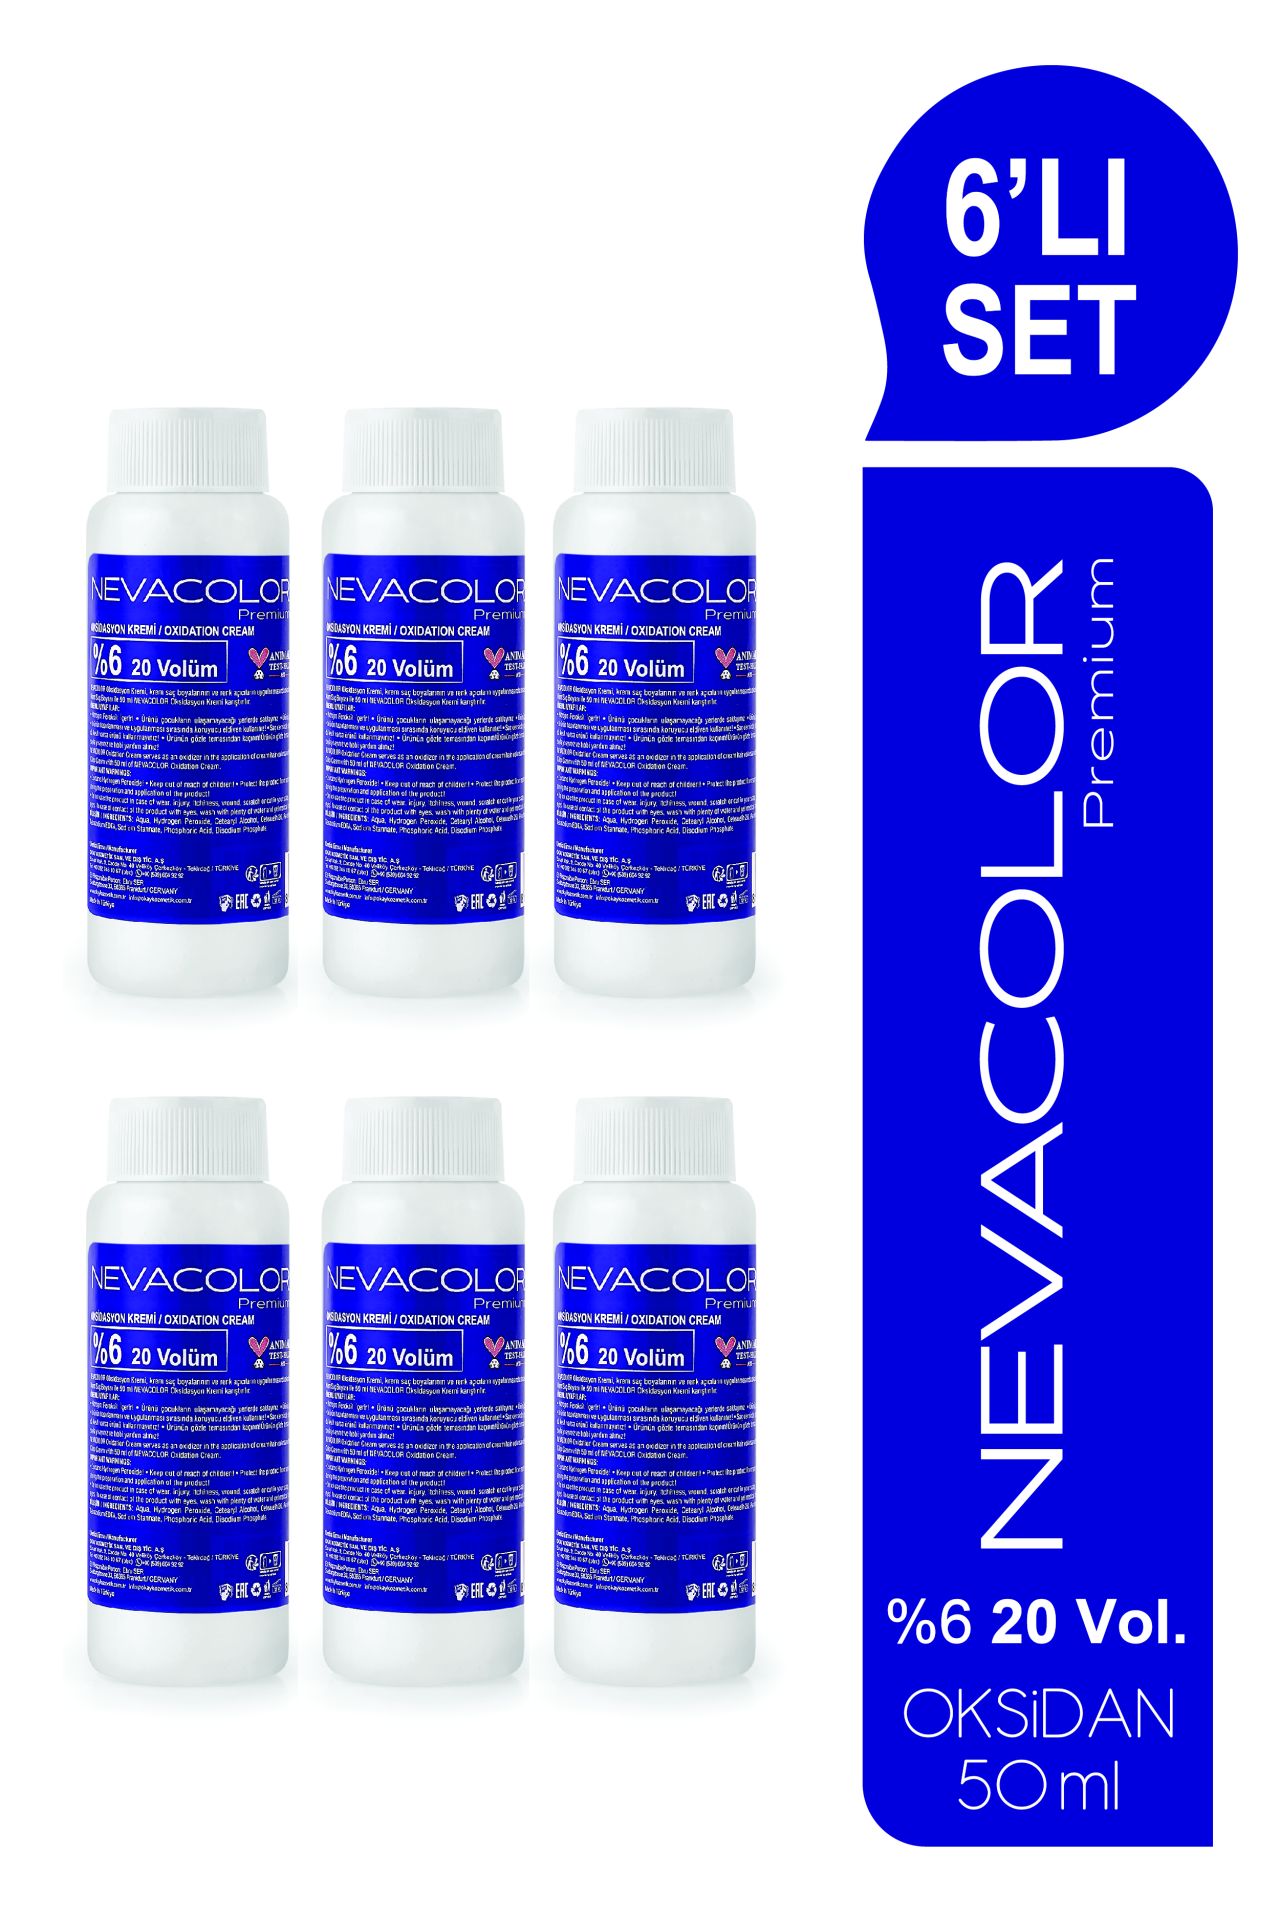 Nevacolor Oksidasyon Kremi 50 ml - 20 Volüm %6 6'lı